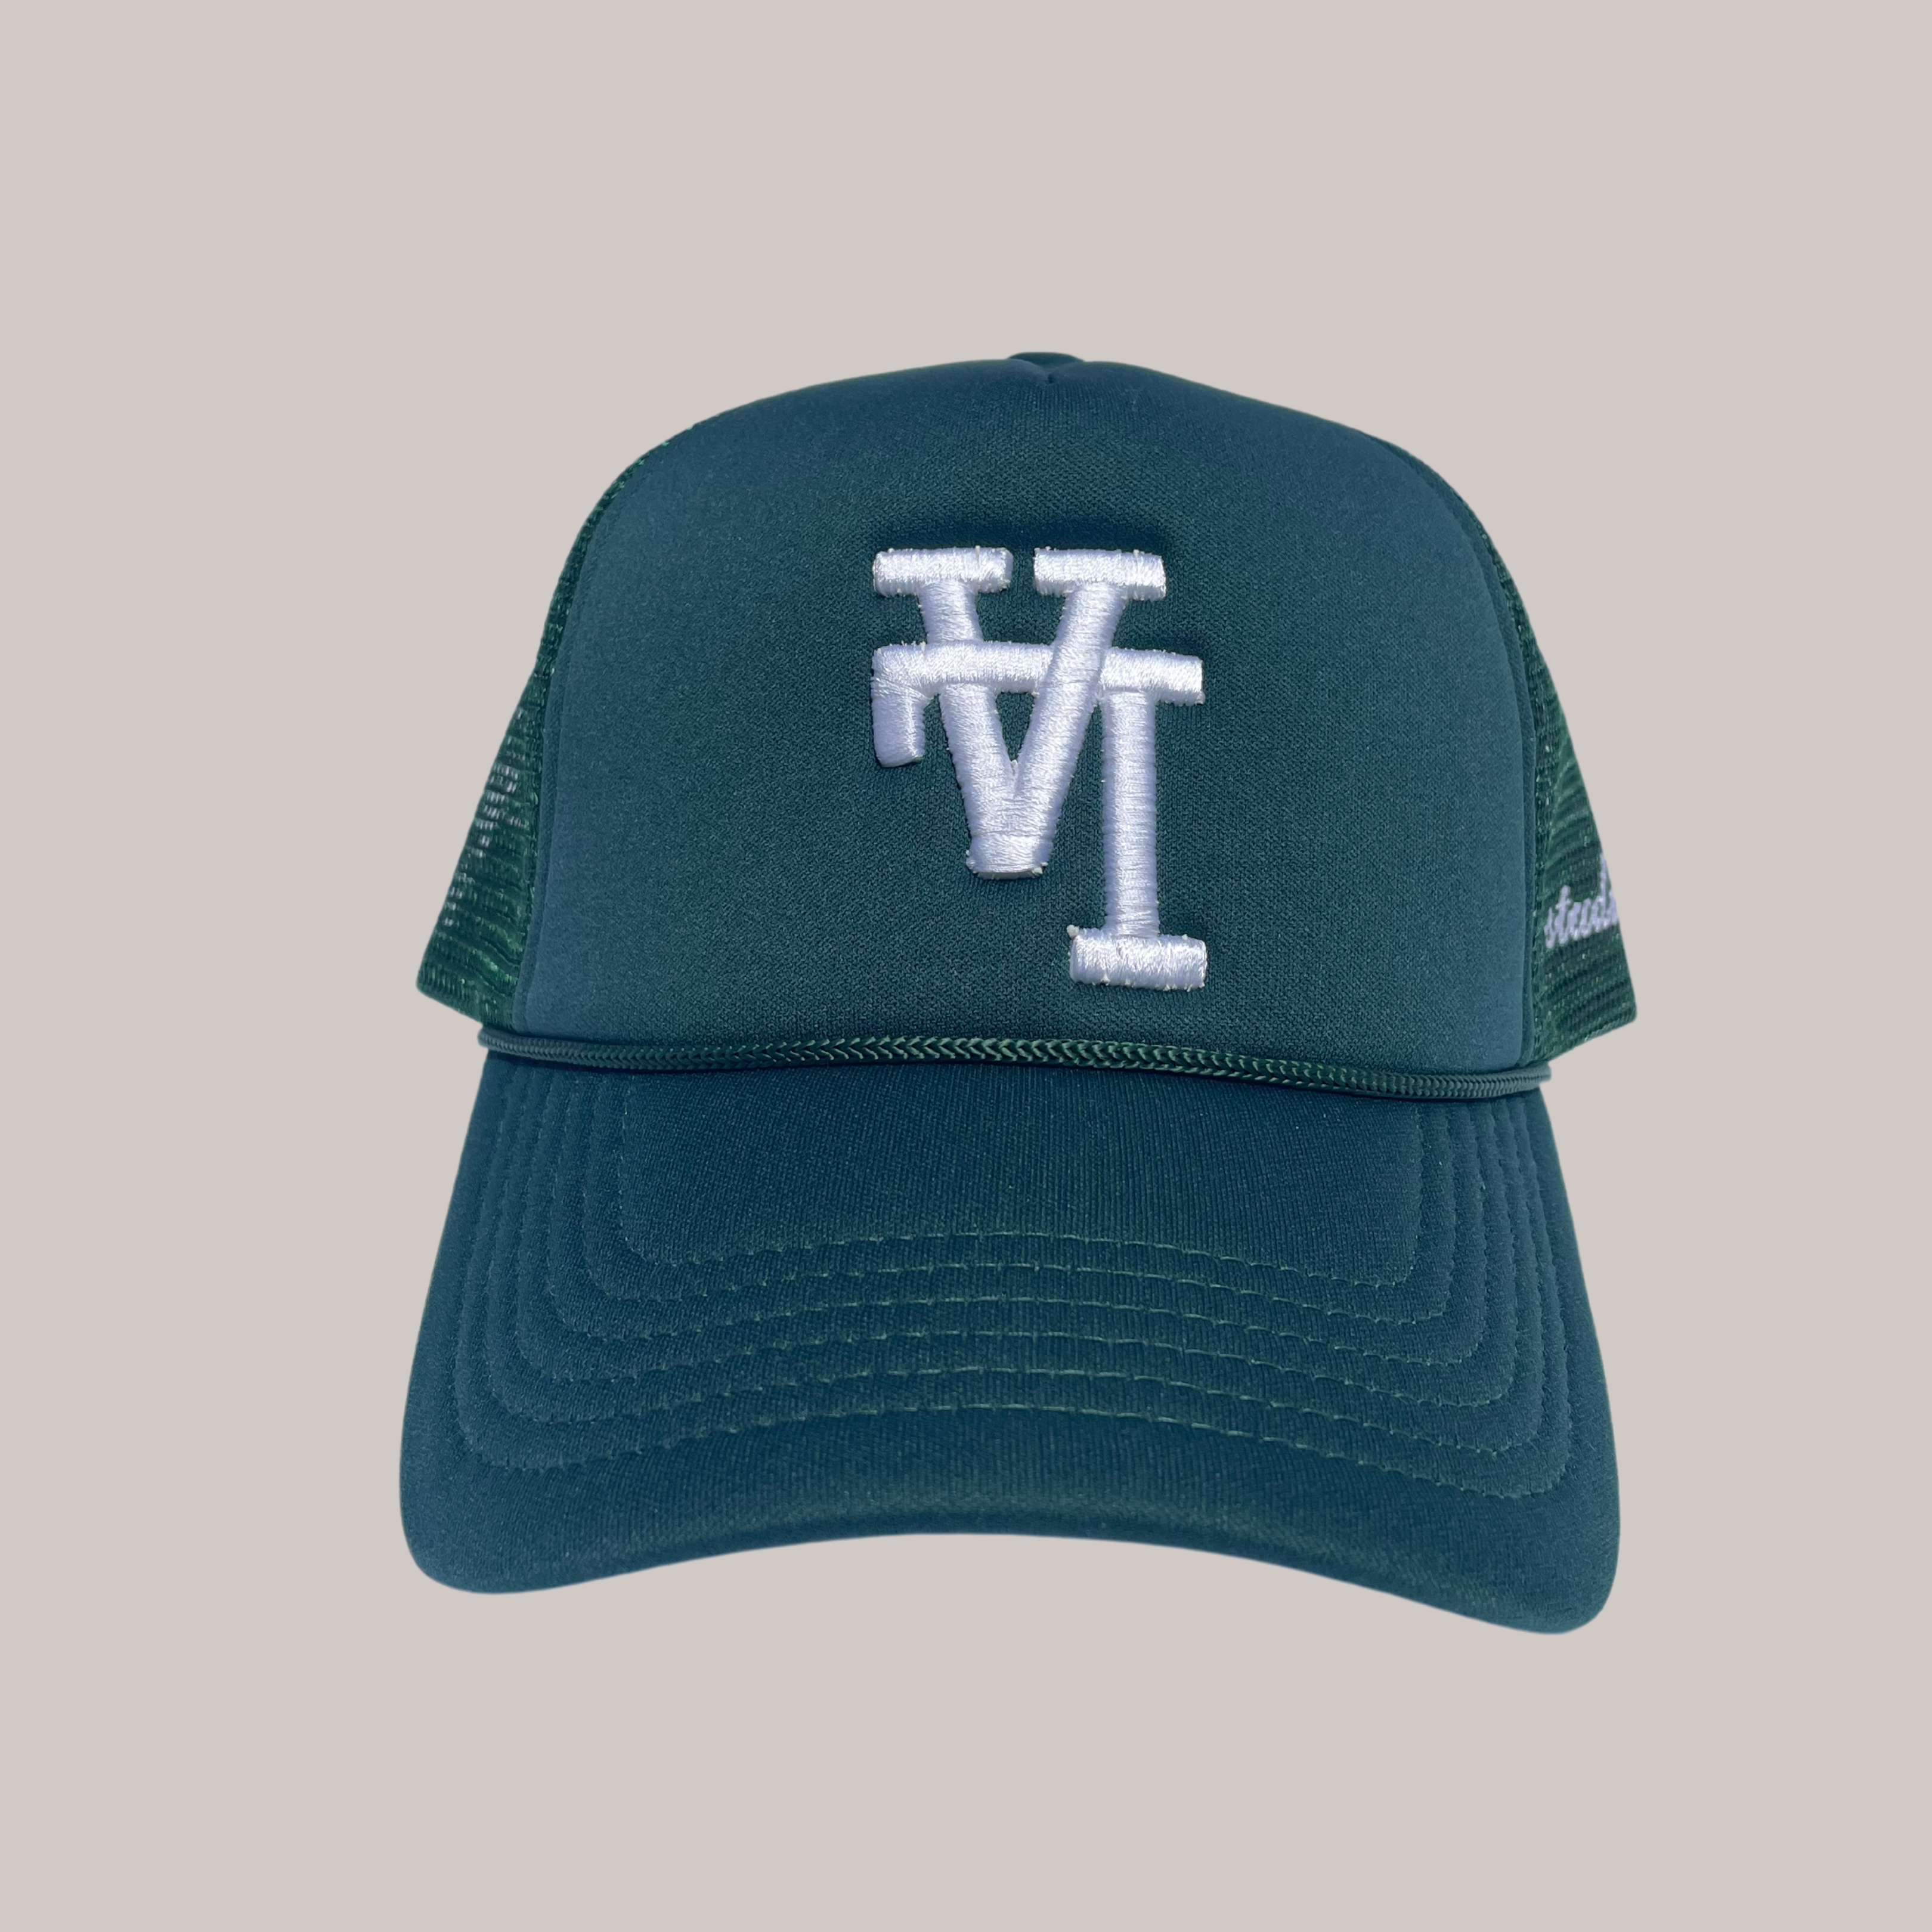 Upside Down LA Trucker Hat - FOREST GREEN